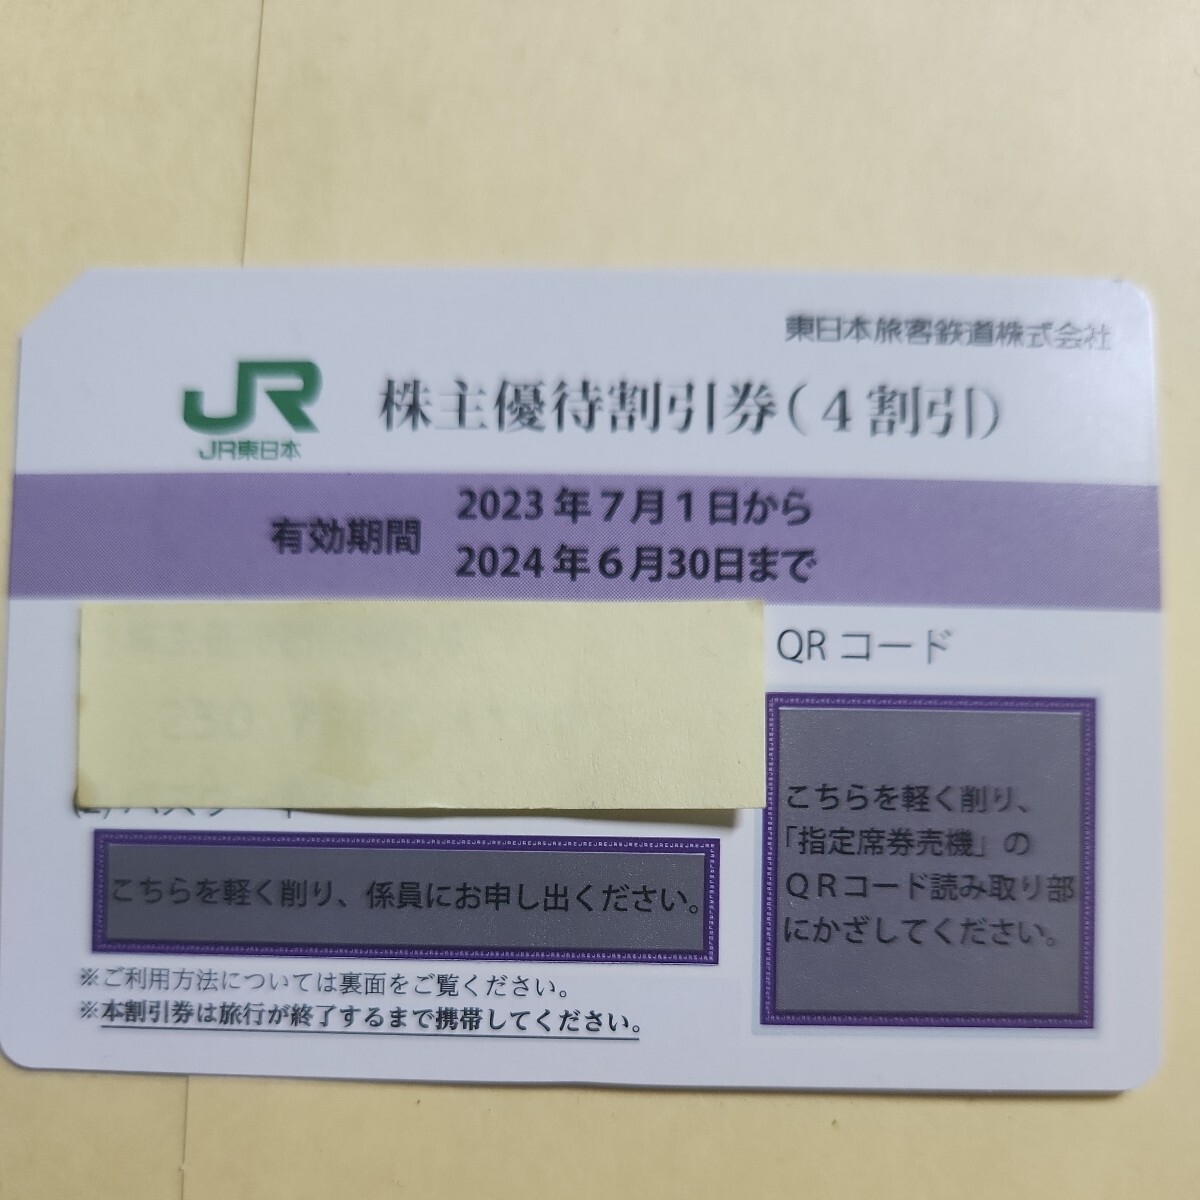 JR東日本 株主優待割引券の画像1